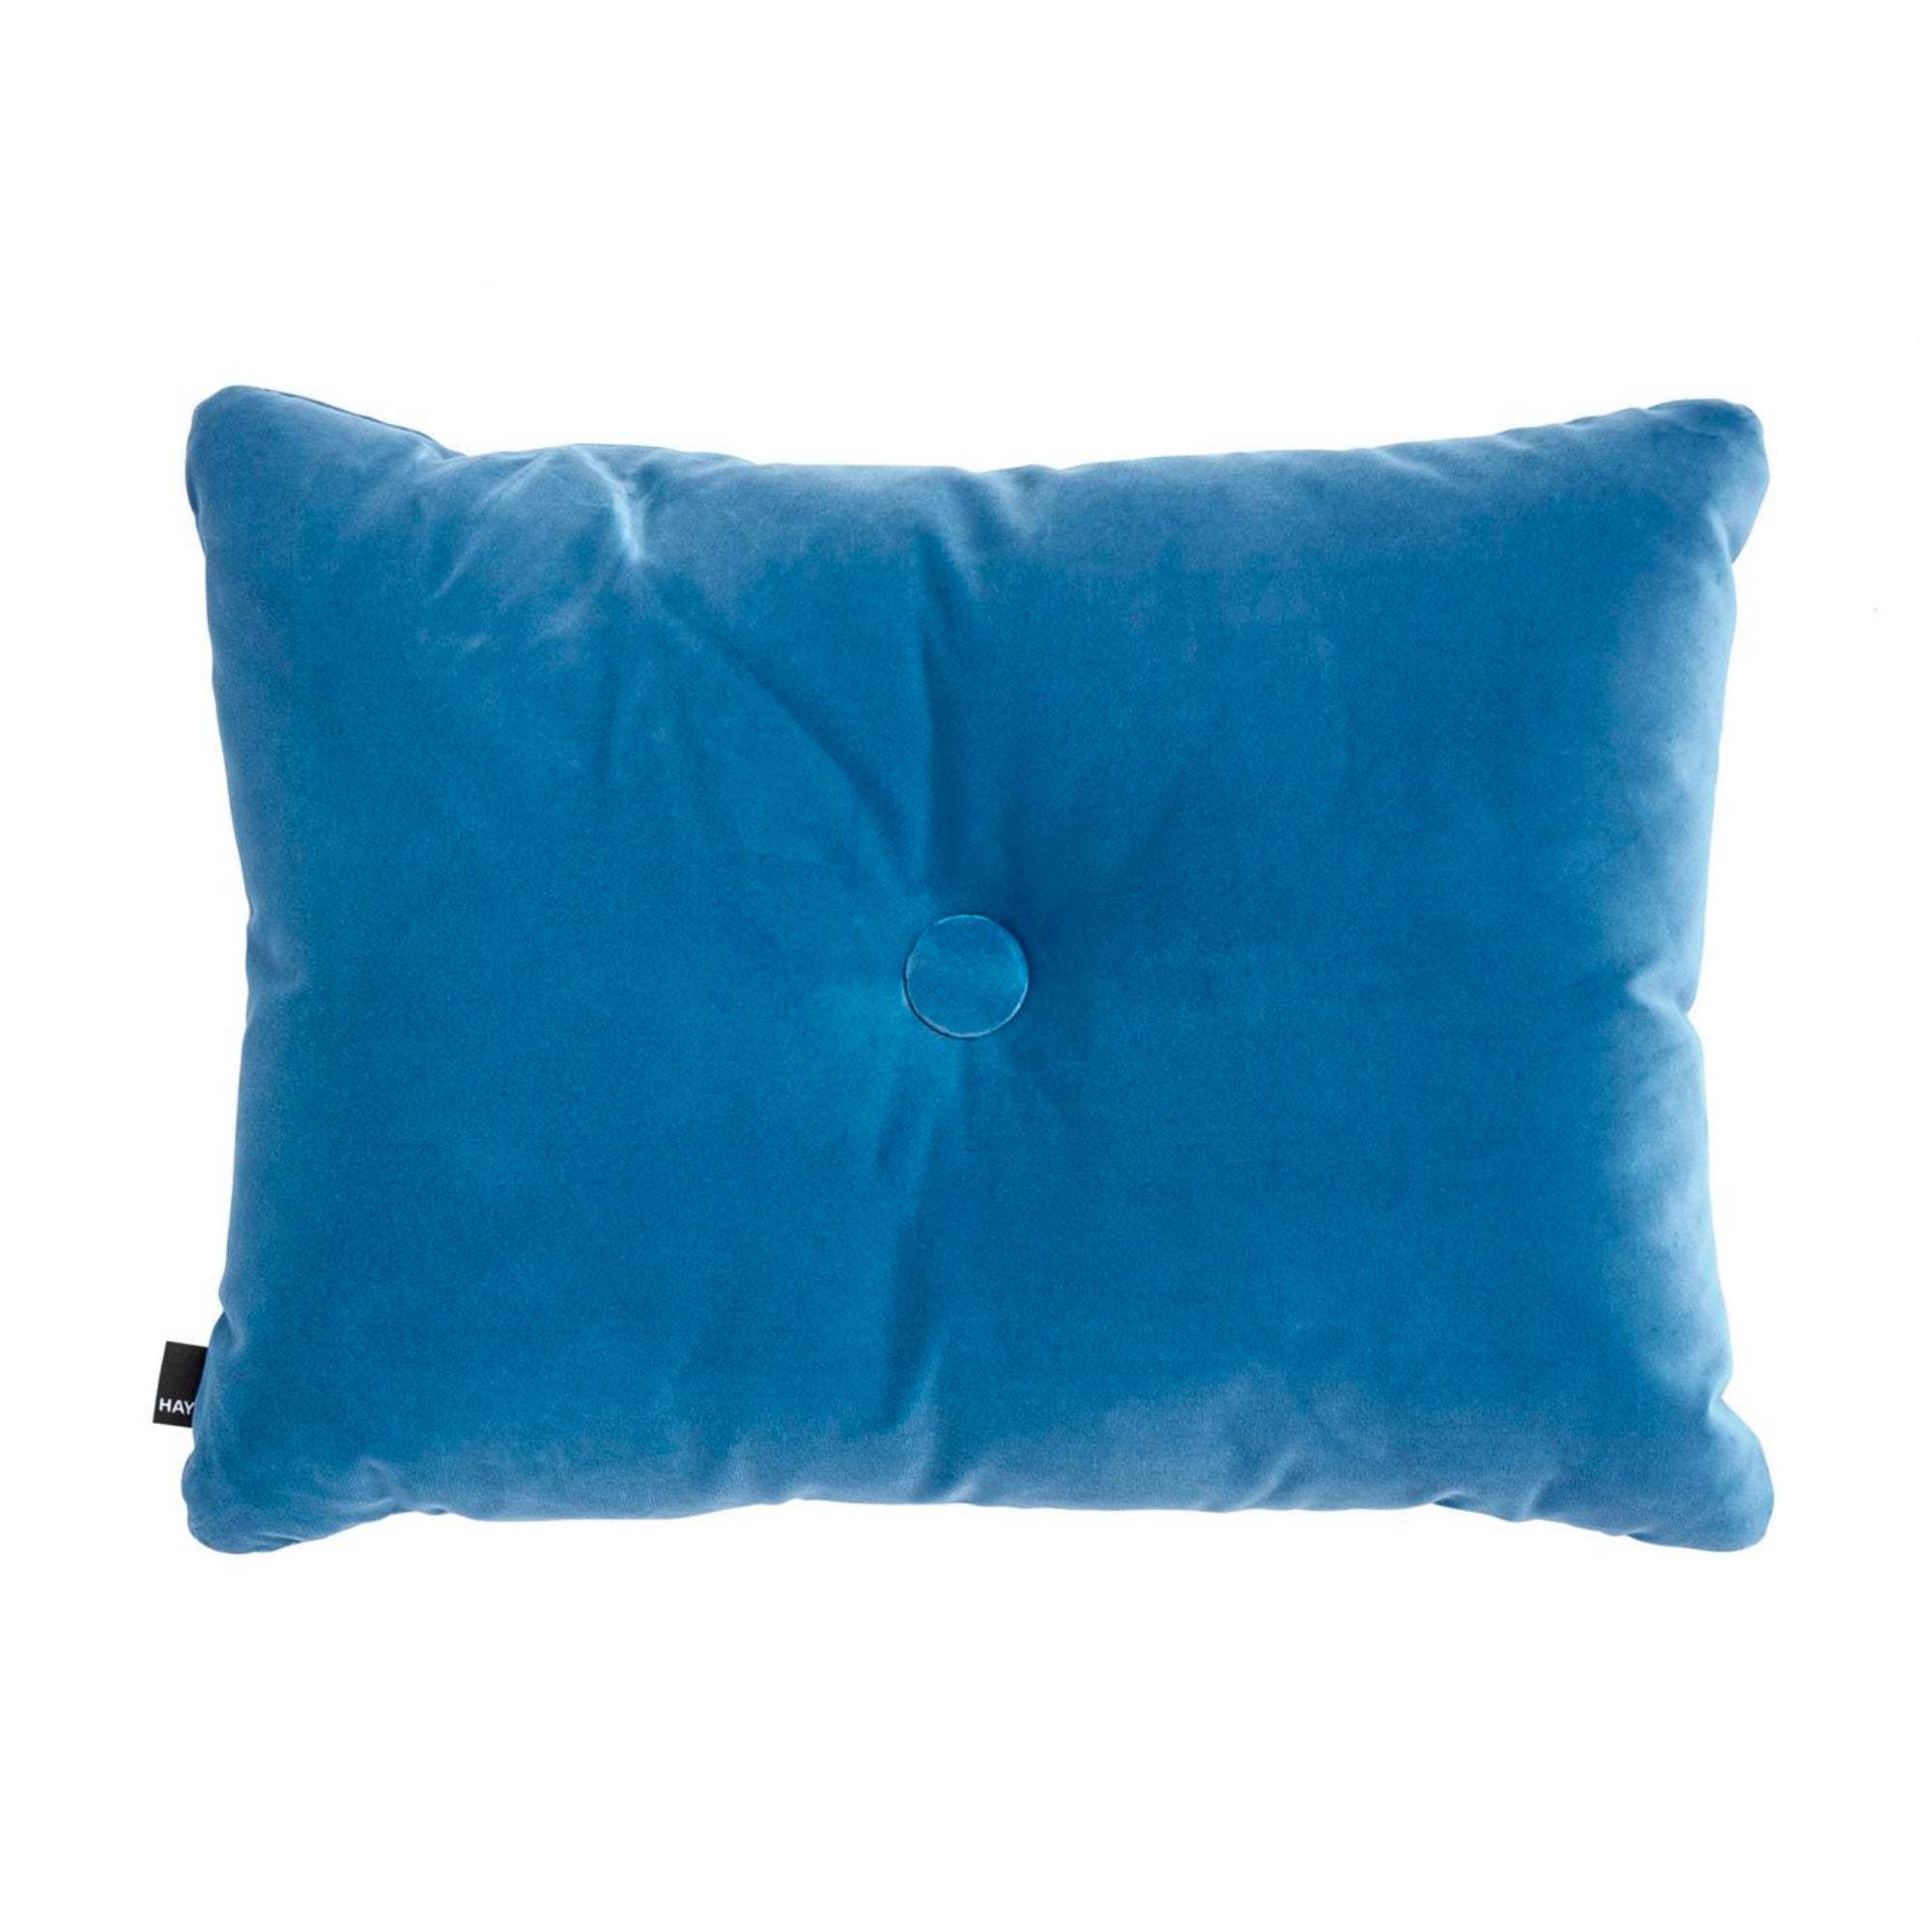 Hay Dot cushion soft, blue